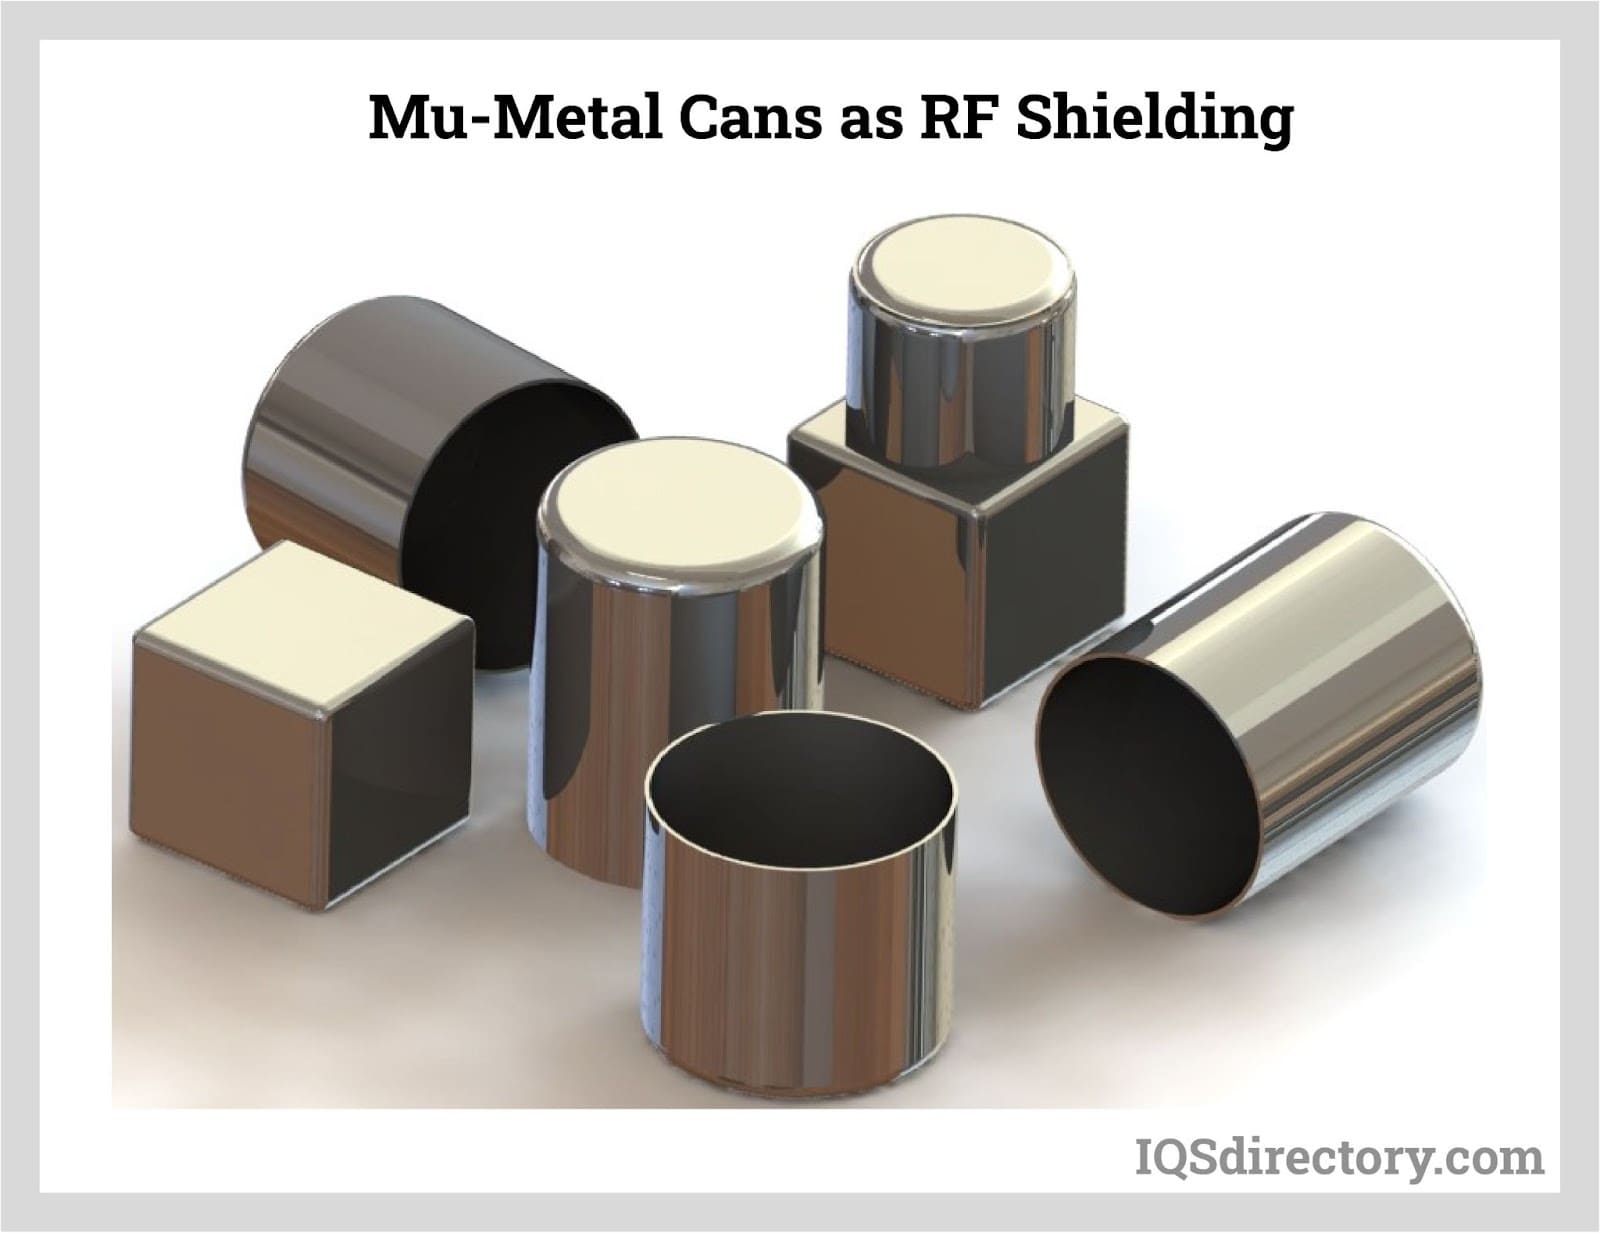 Mu-Metal Cans as RF Shielding